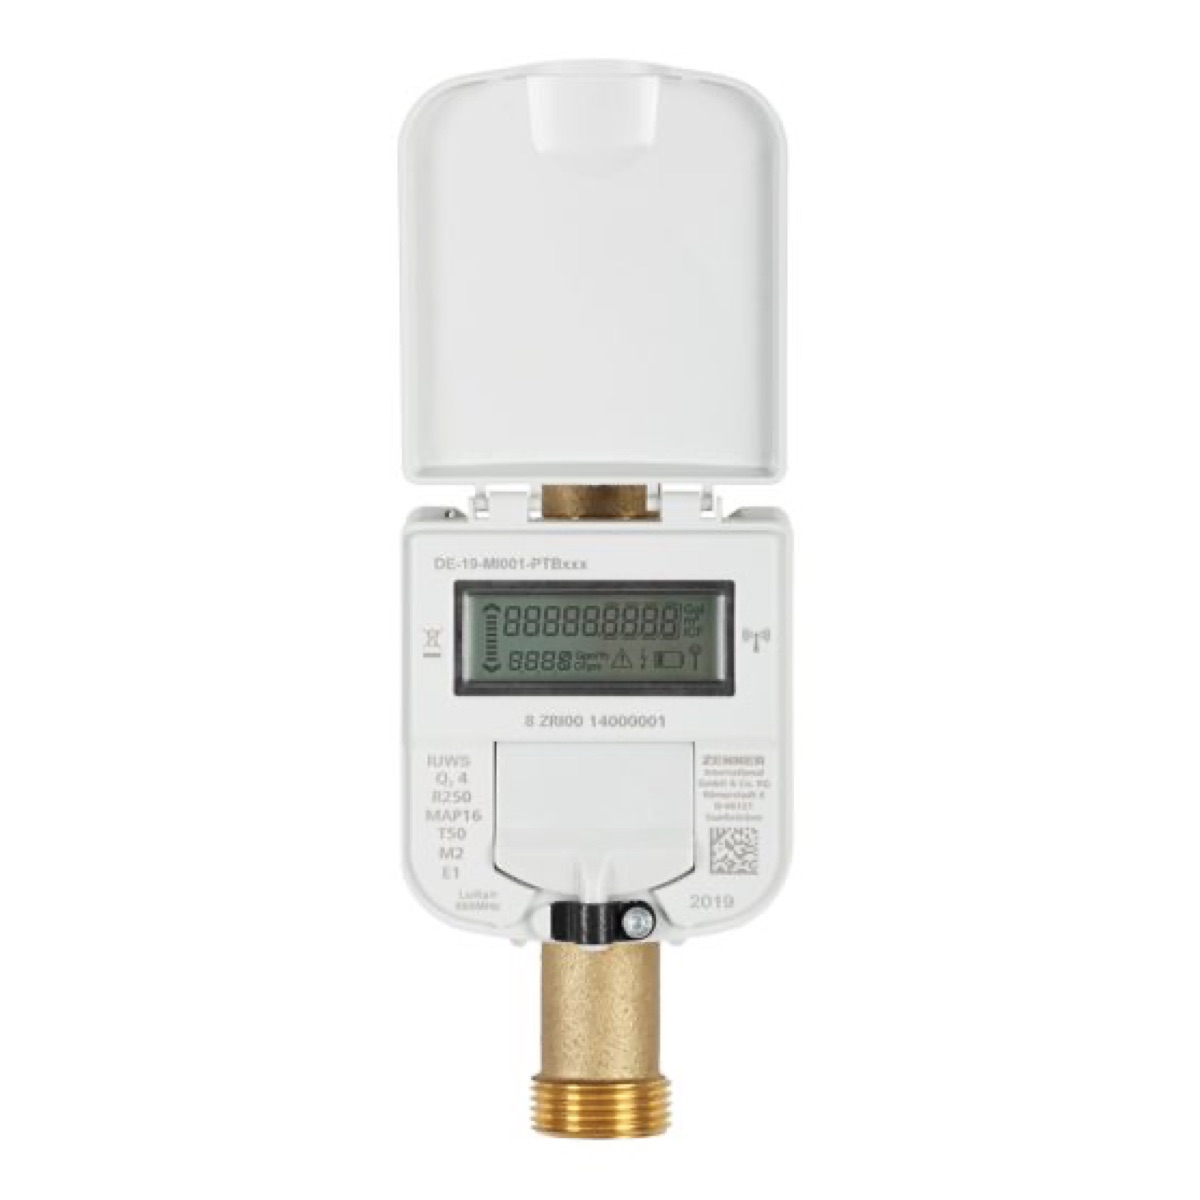 ZENNER Ultrasonic IUWS water meter